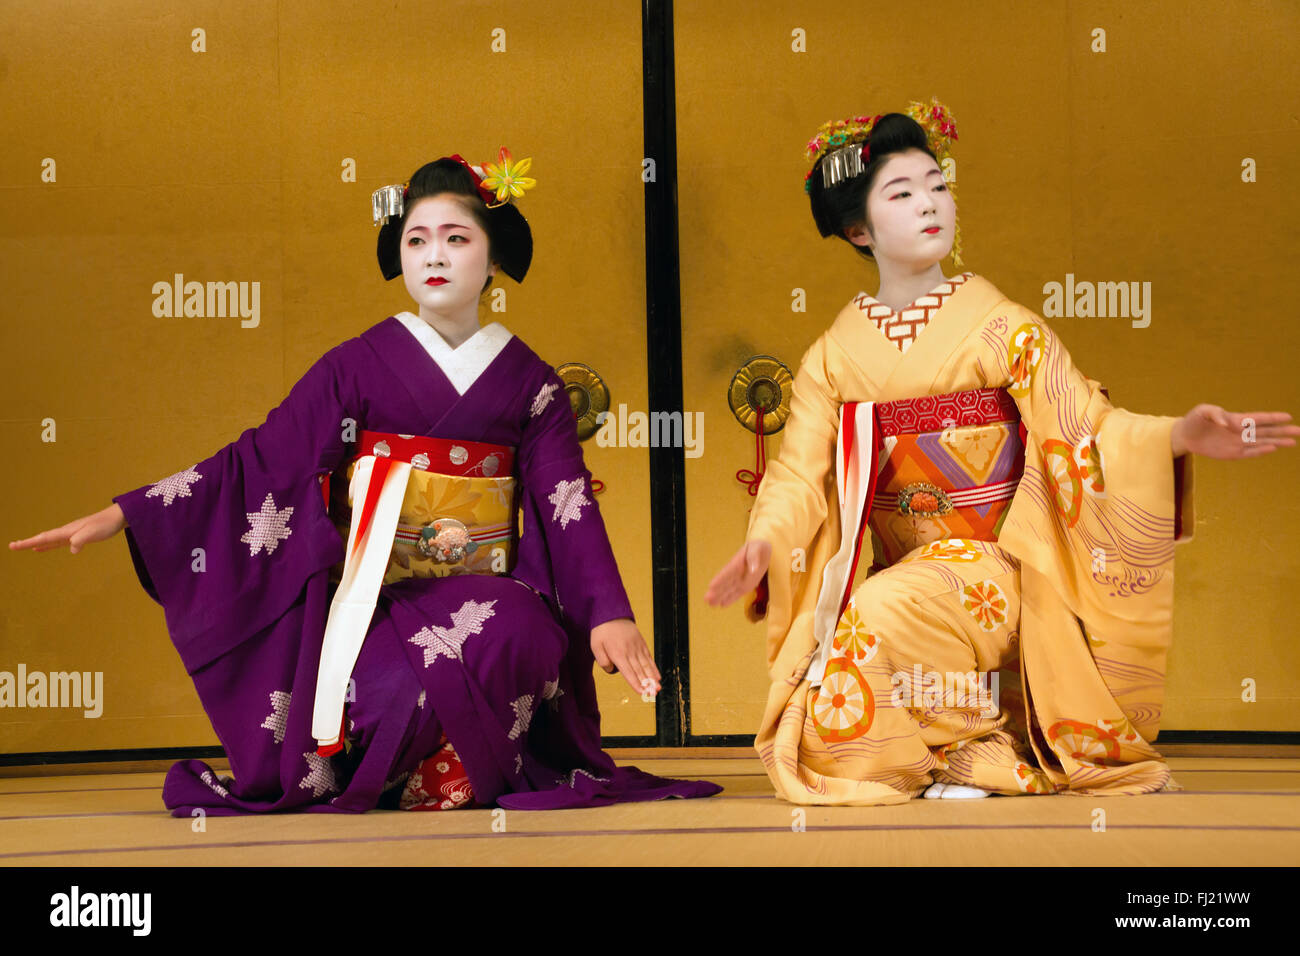 La danse des geishas à Kyoto, Japon Banque D'Images